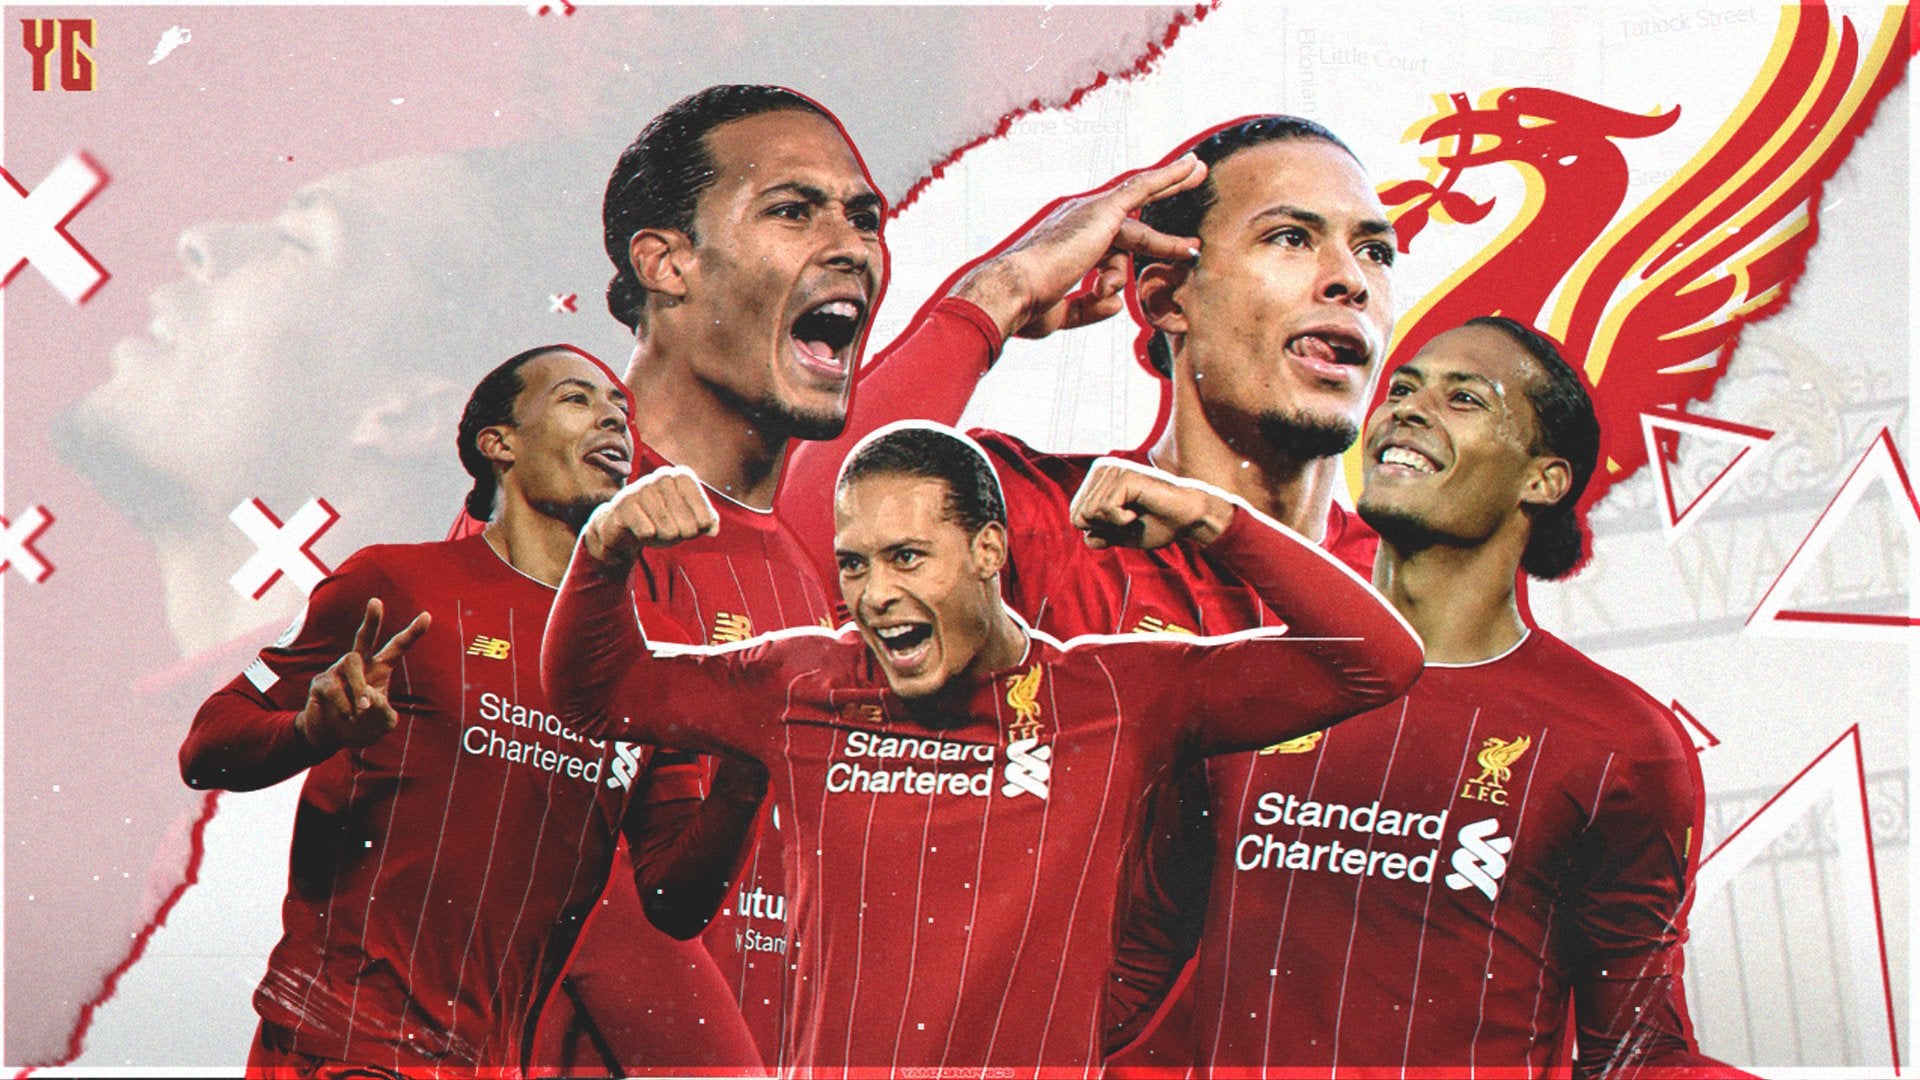 Virgil Van Dijk Desktop Wallpaper, made by me. Feedback appreciated!: LiverpoolFC